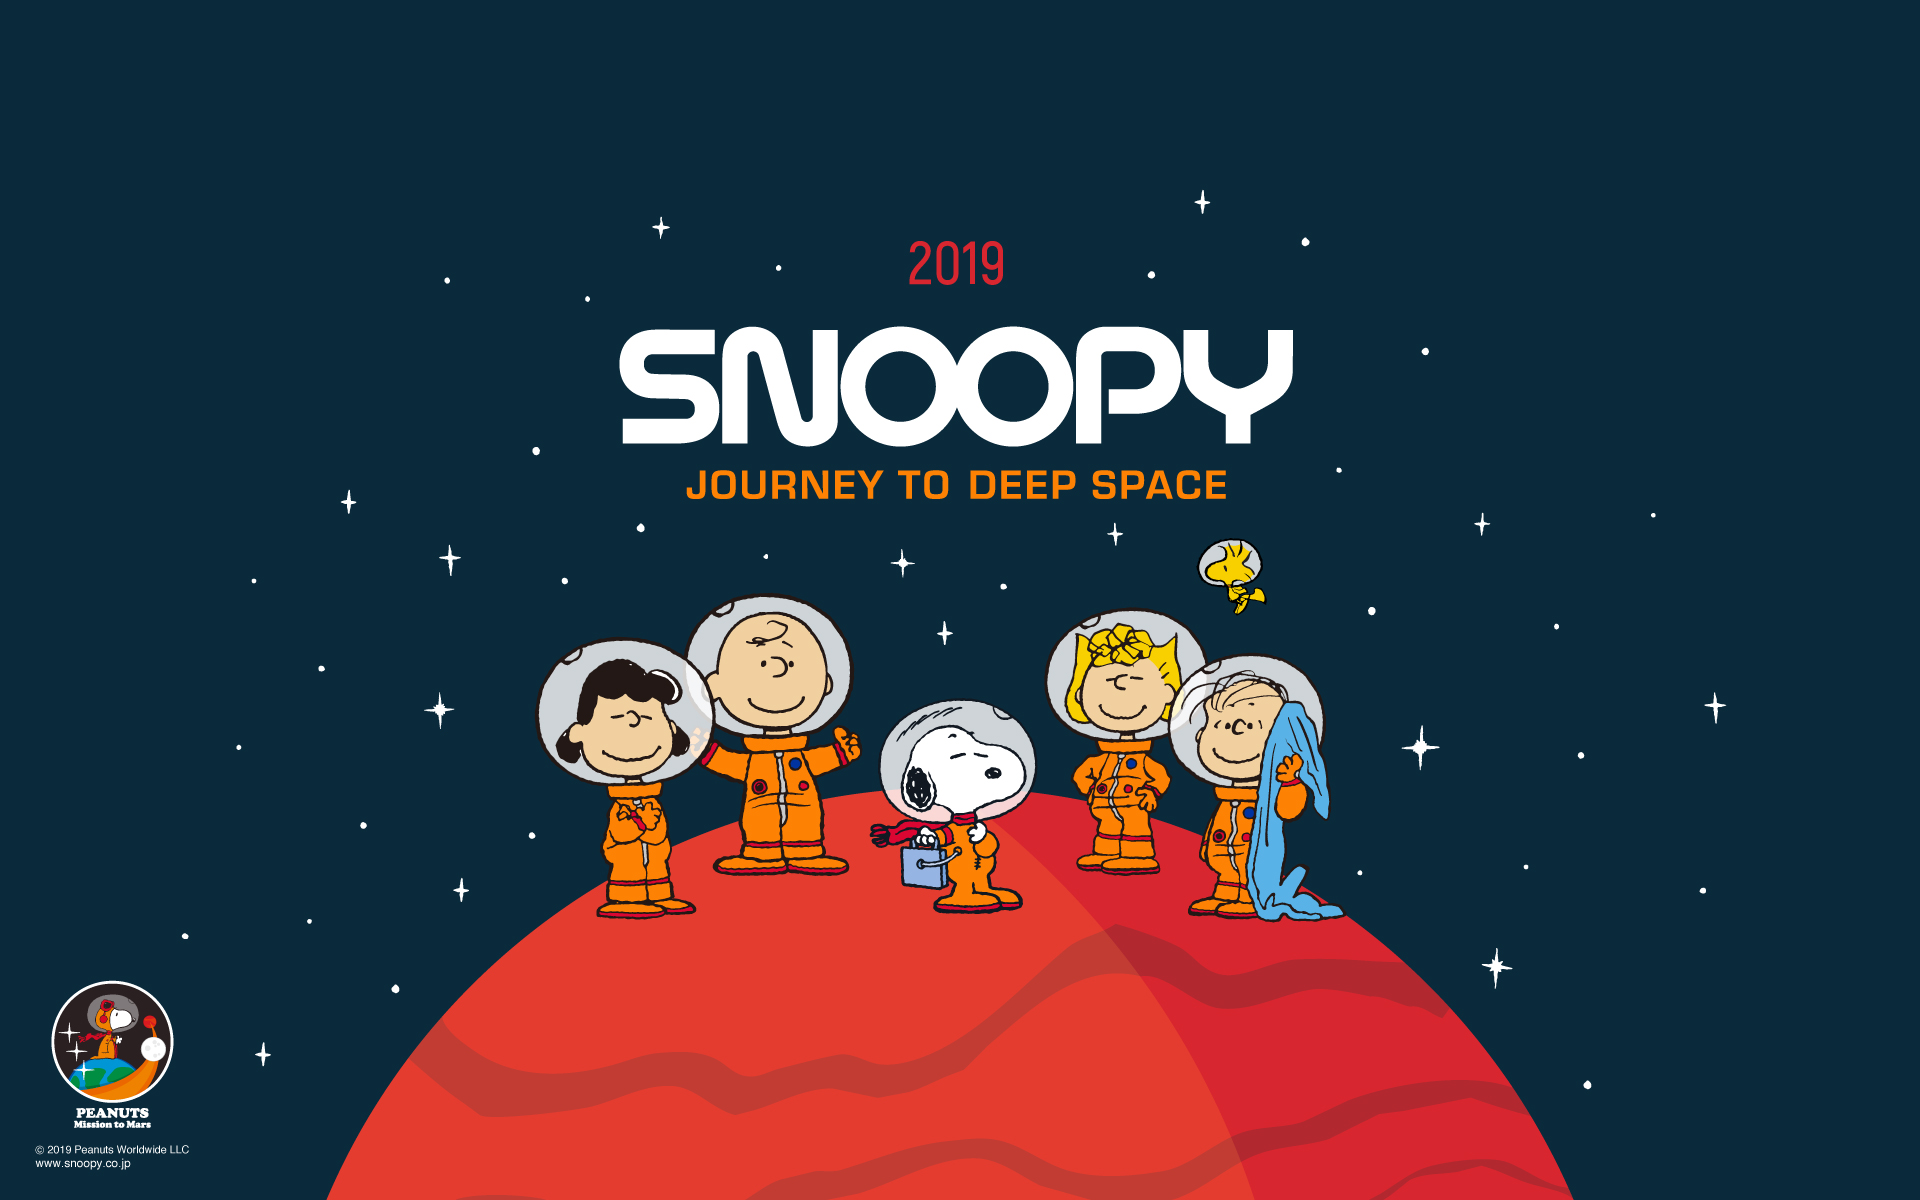 7月の壁紙はアストロノーツ Column Snoopy Co Jp 日本のスヌーピー公式サイト